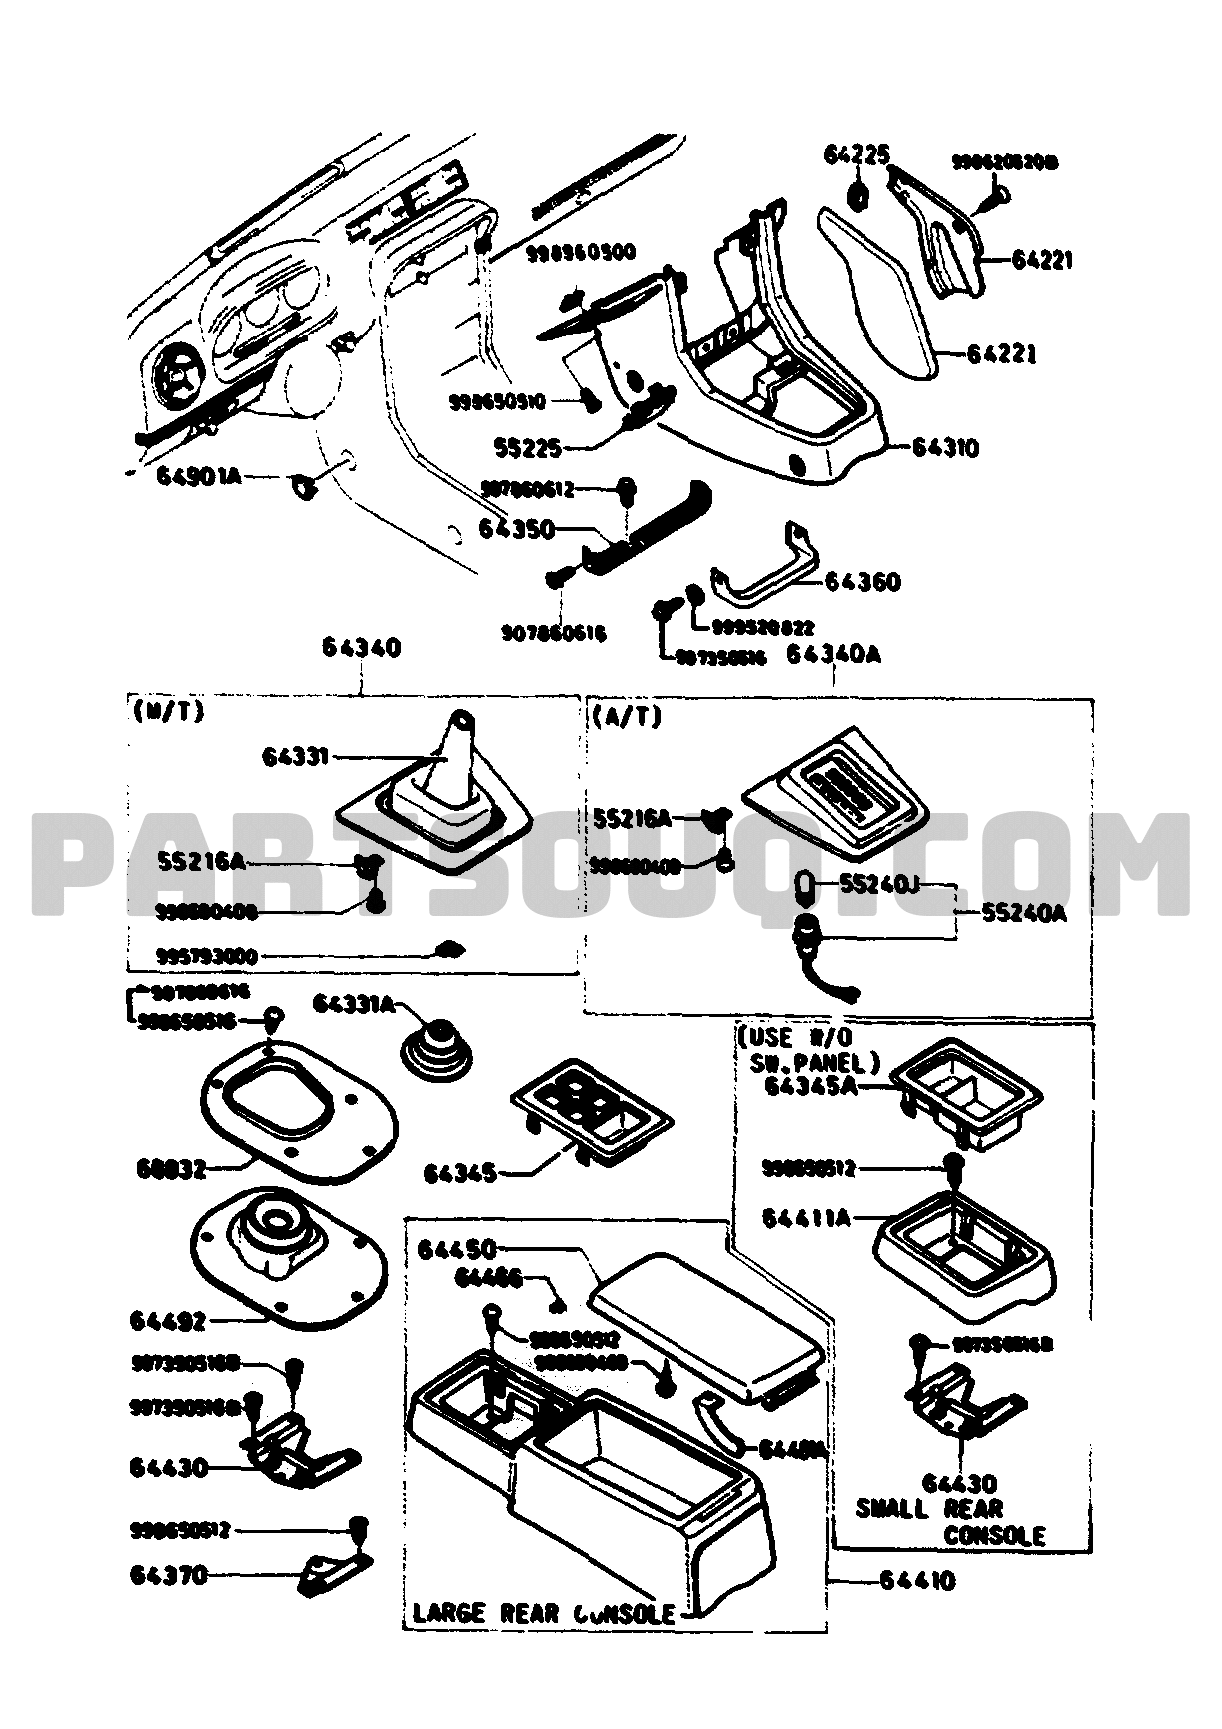 5570A - CONSOLE 01/02 | Mazda RX-7 1982 PQFA02 | Parts Catalogs 